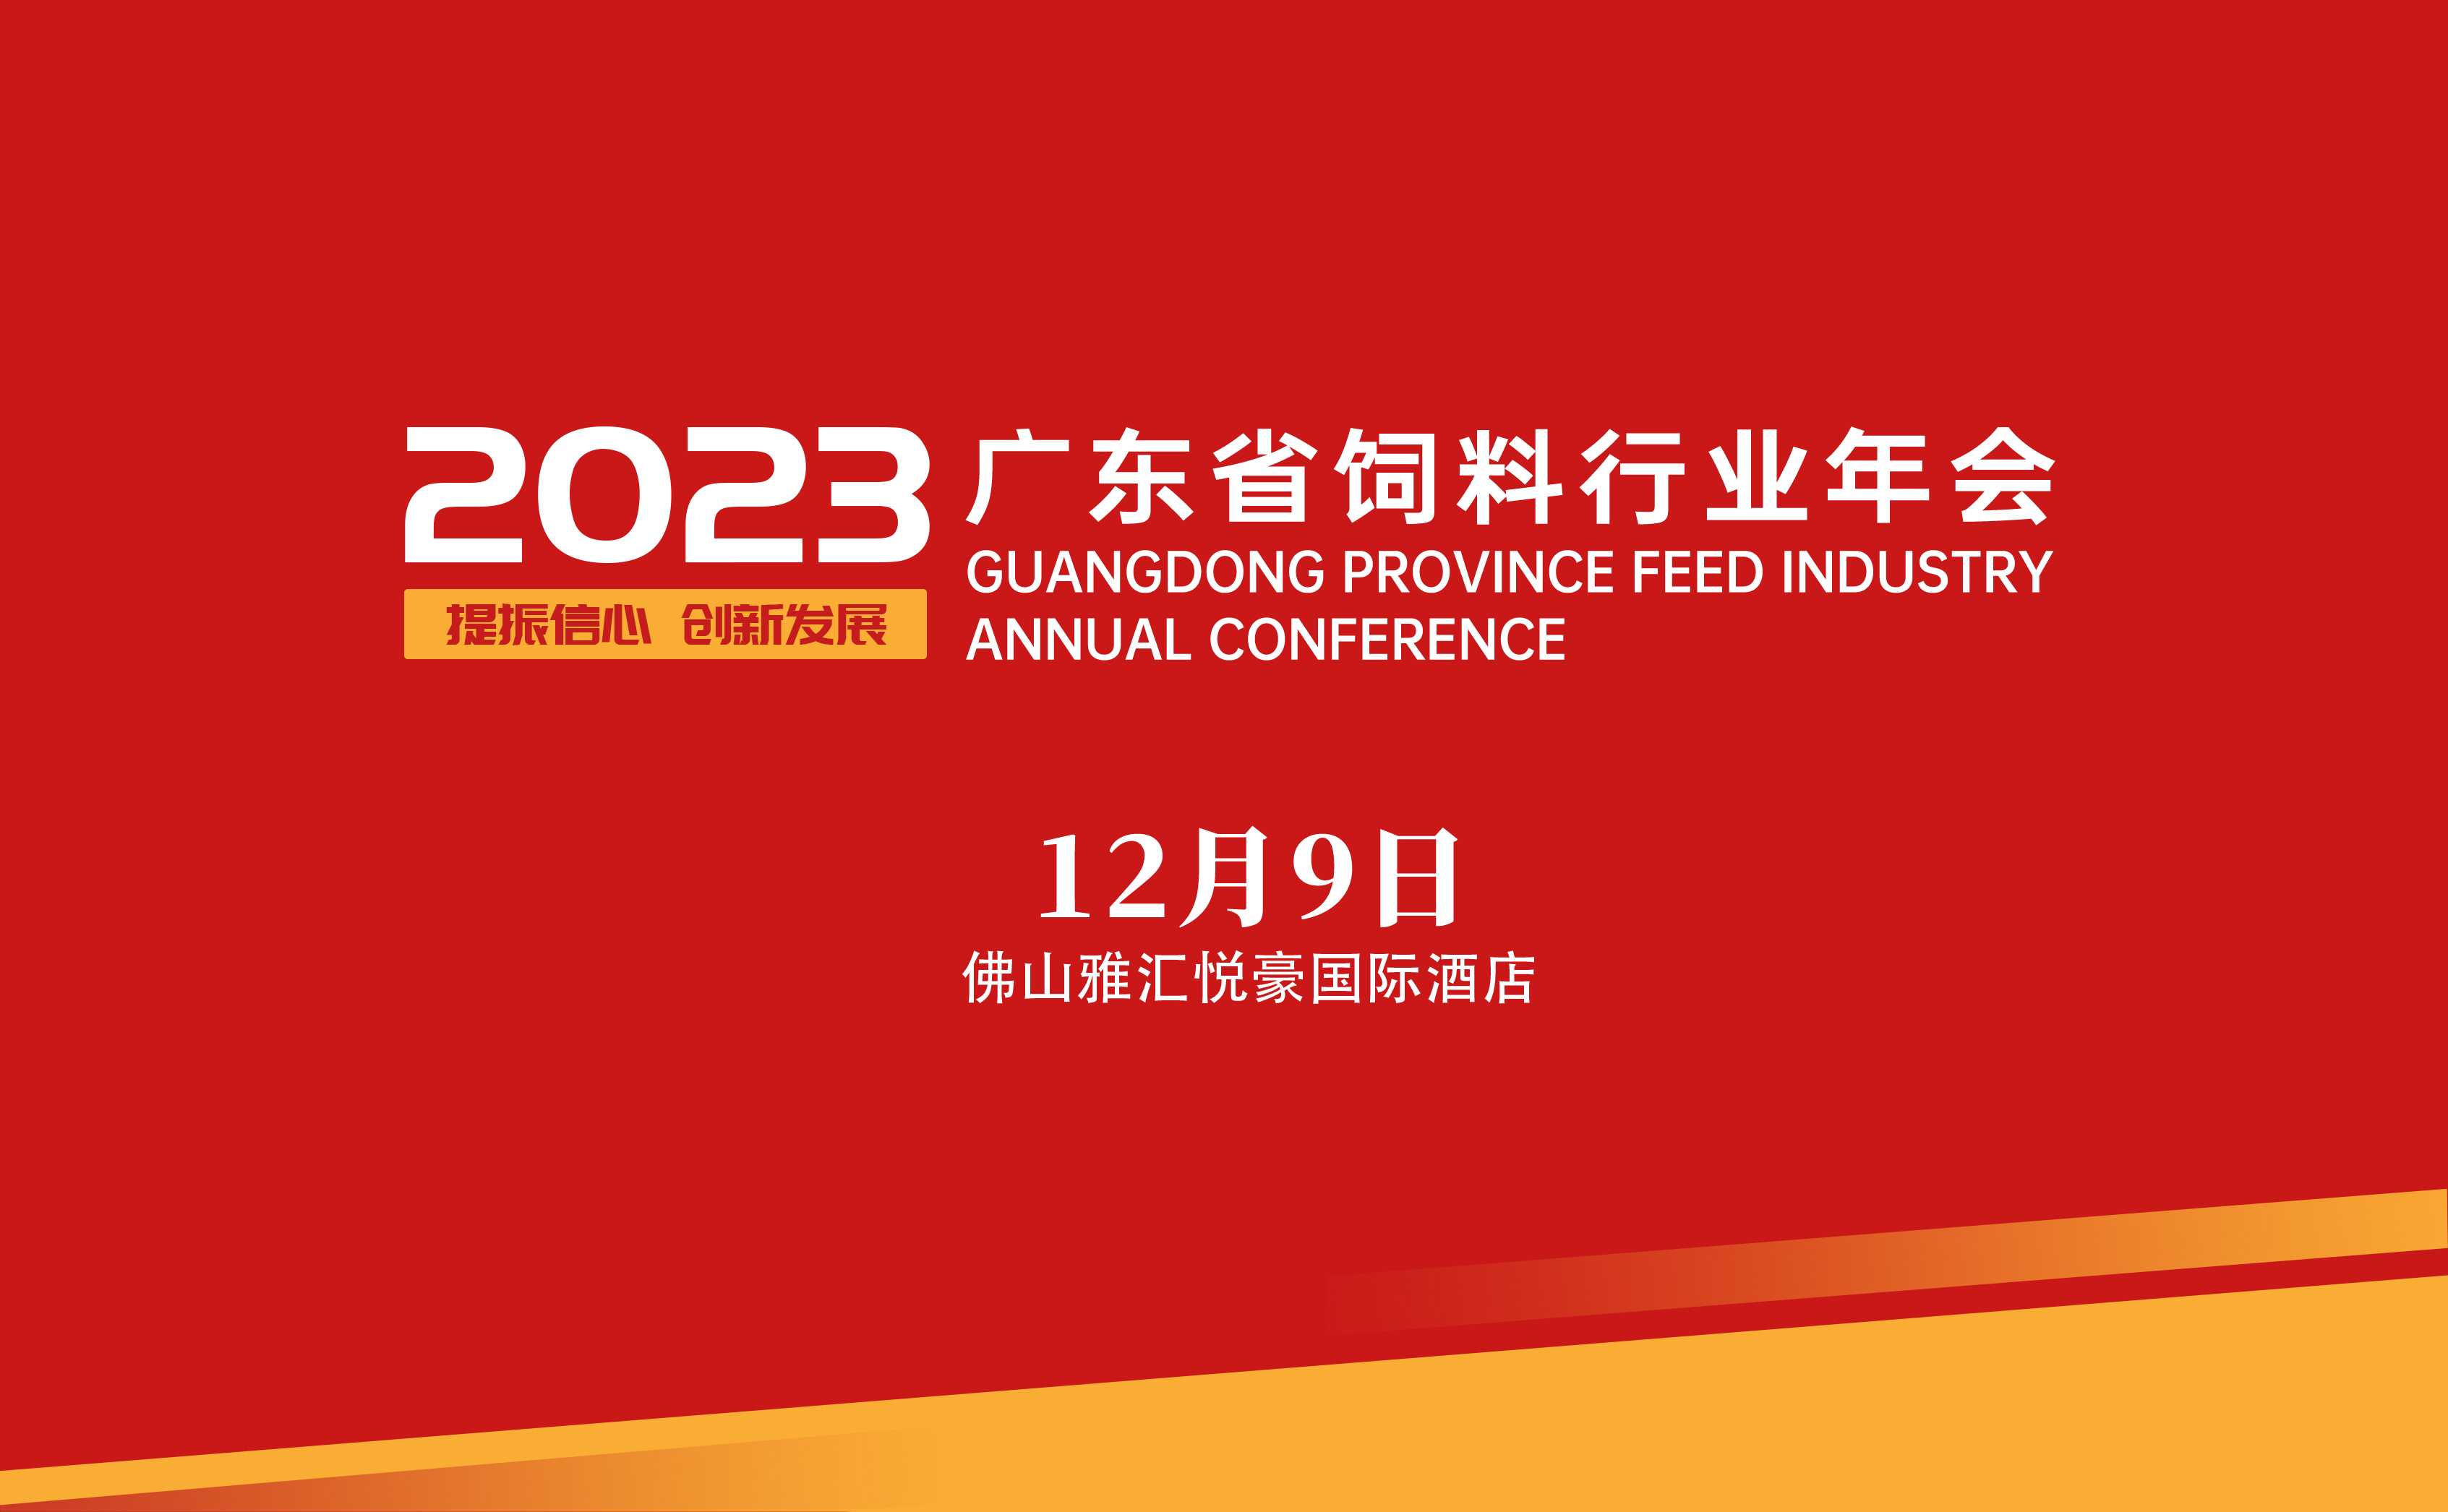 2023年广东省饲料行业年会 筹备工作的公告（一）